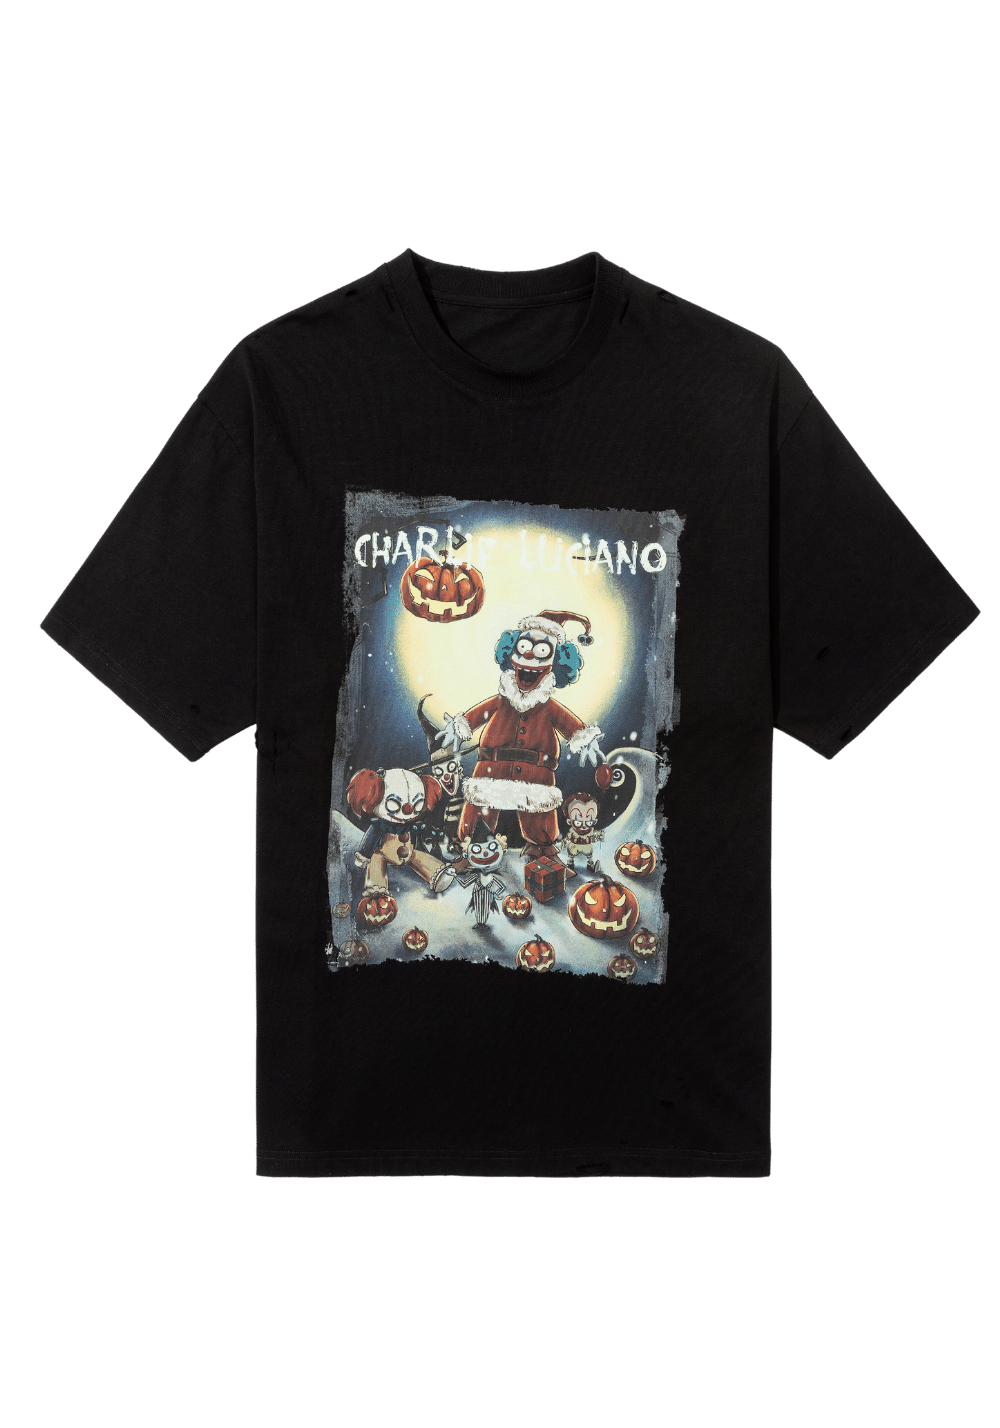 'Joker Santa Claus' Print Vintage T-Shirt - PSYLOS 1, 'Joker Santa Claus' Print Vintage T-Shirt, T-Shirt, Charlie Luciano, PSYLOS 1